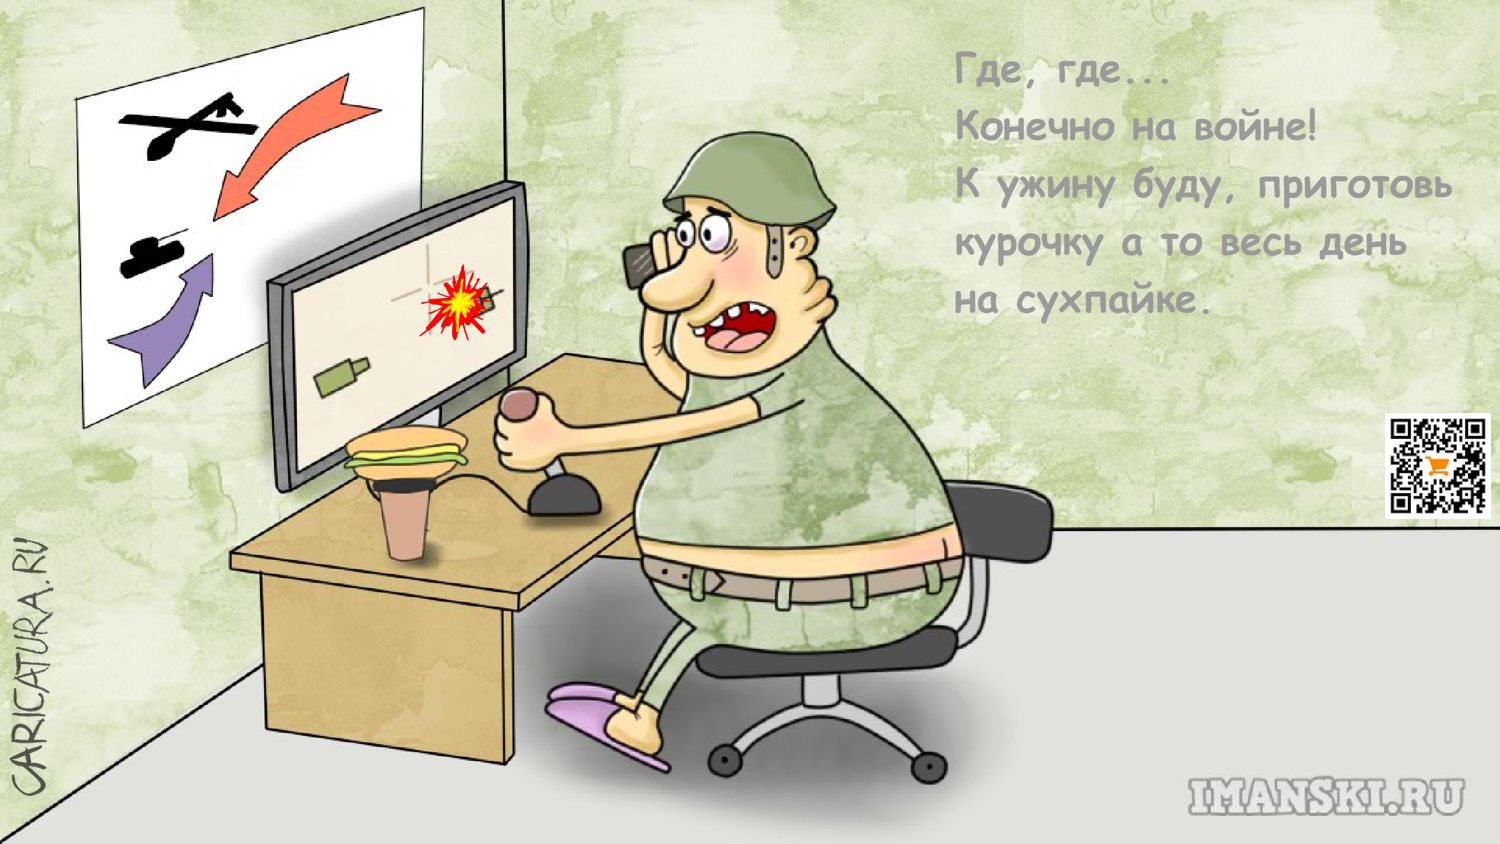 Карикатура "Трудности современной войны", Игорь Иманский